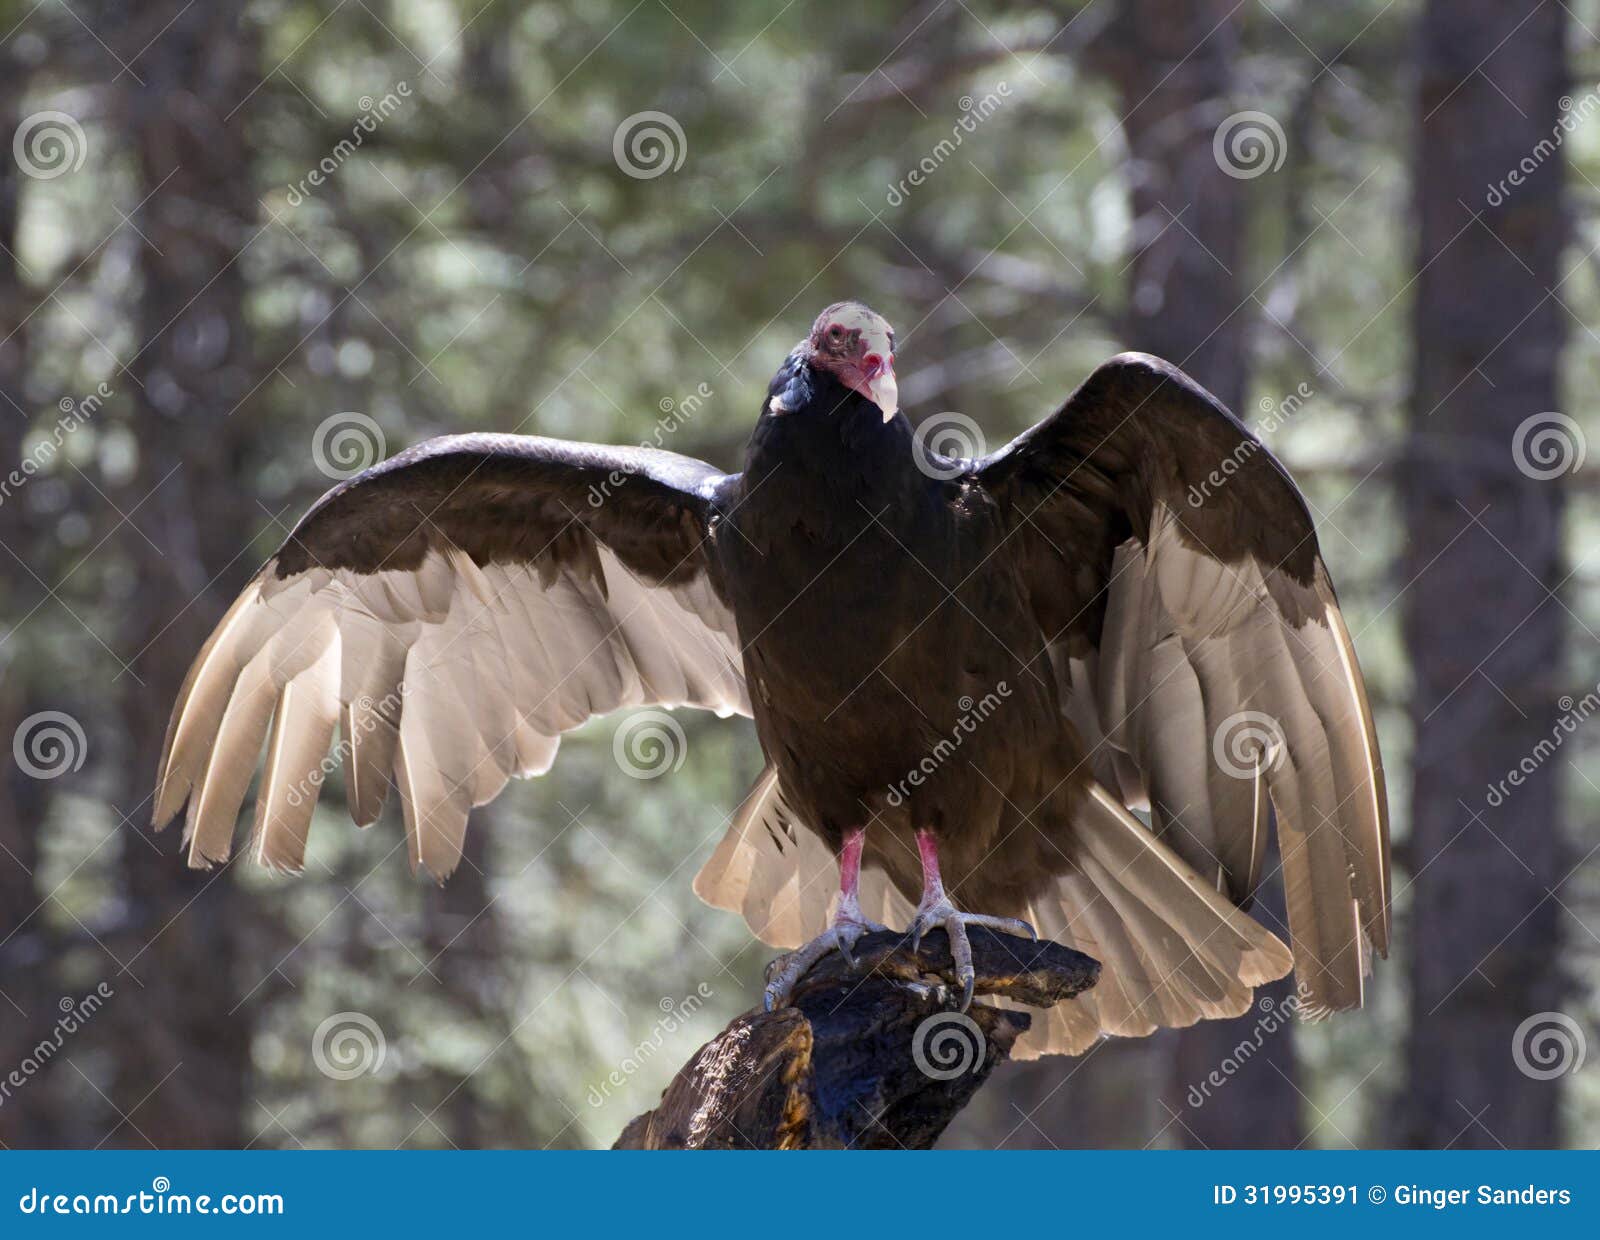 turkey vulture bird sunning on tree